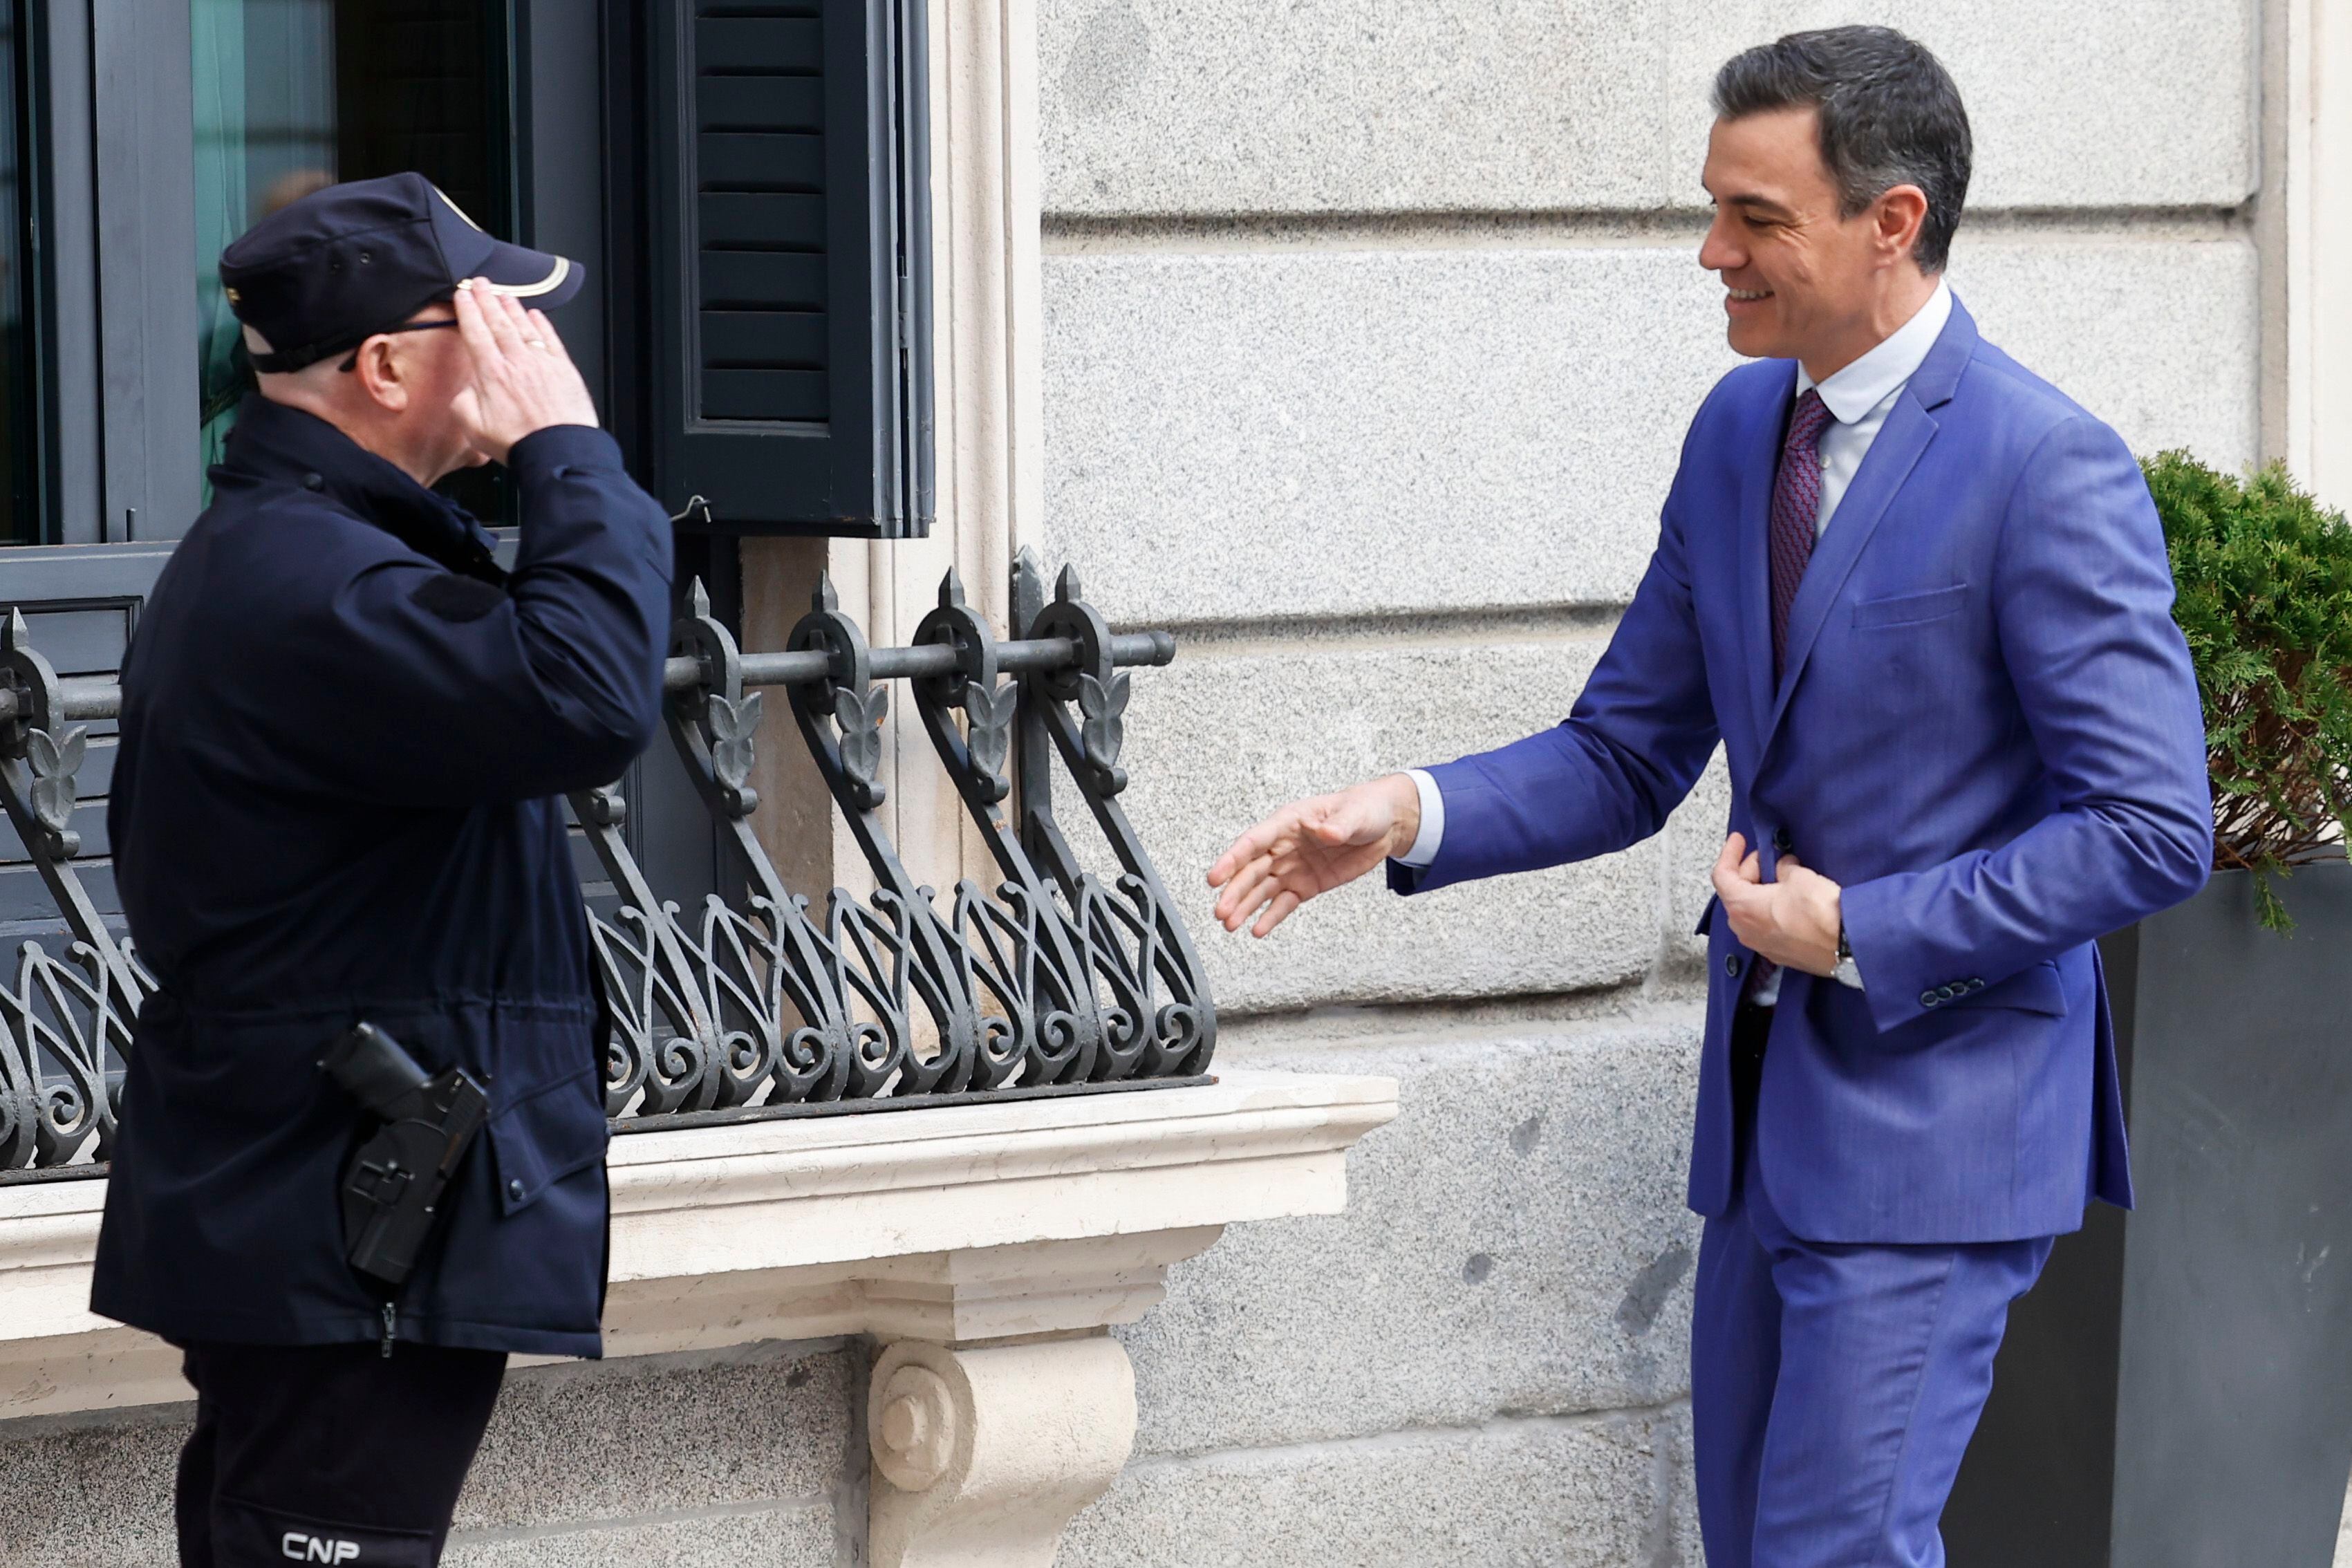 El presidente del Gobierno, Pedro Sánchez, saluda a un policía a su llegada a la Cámara baja.